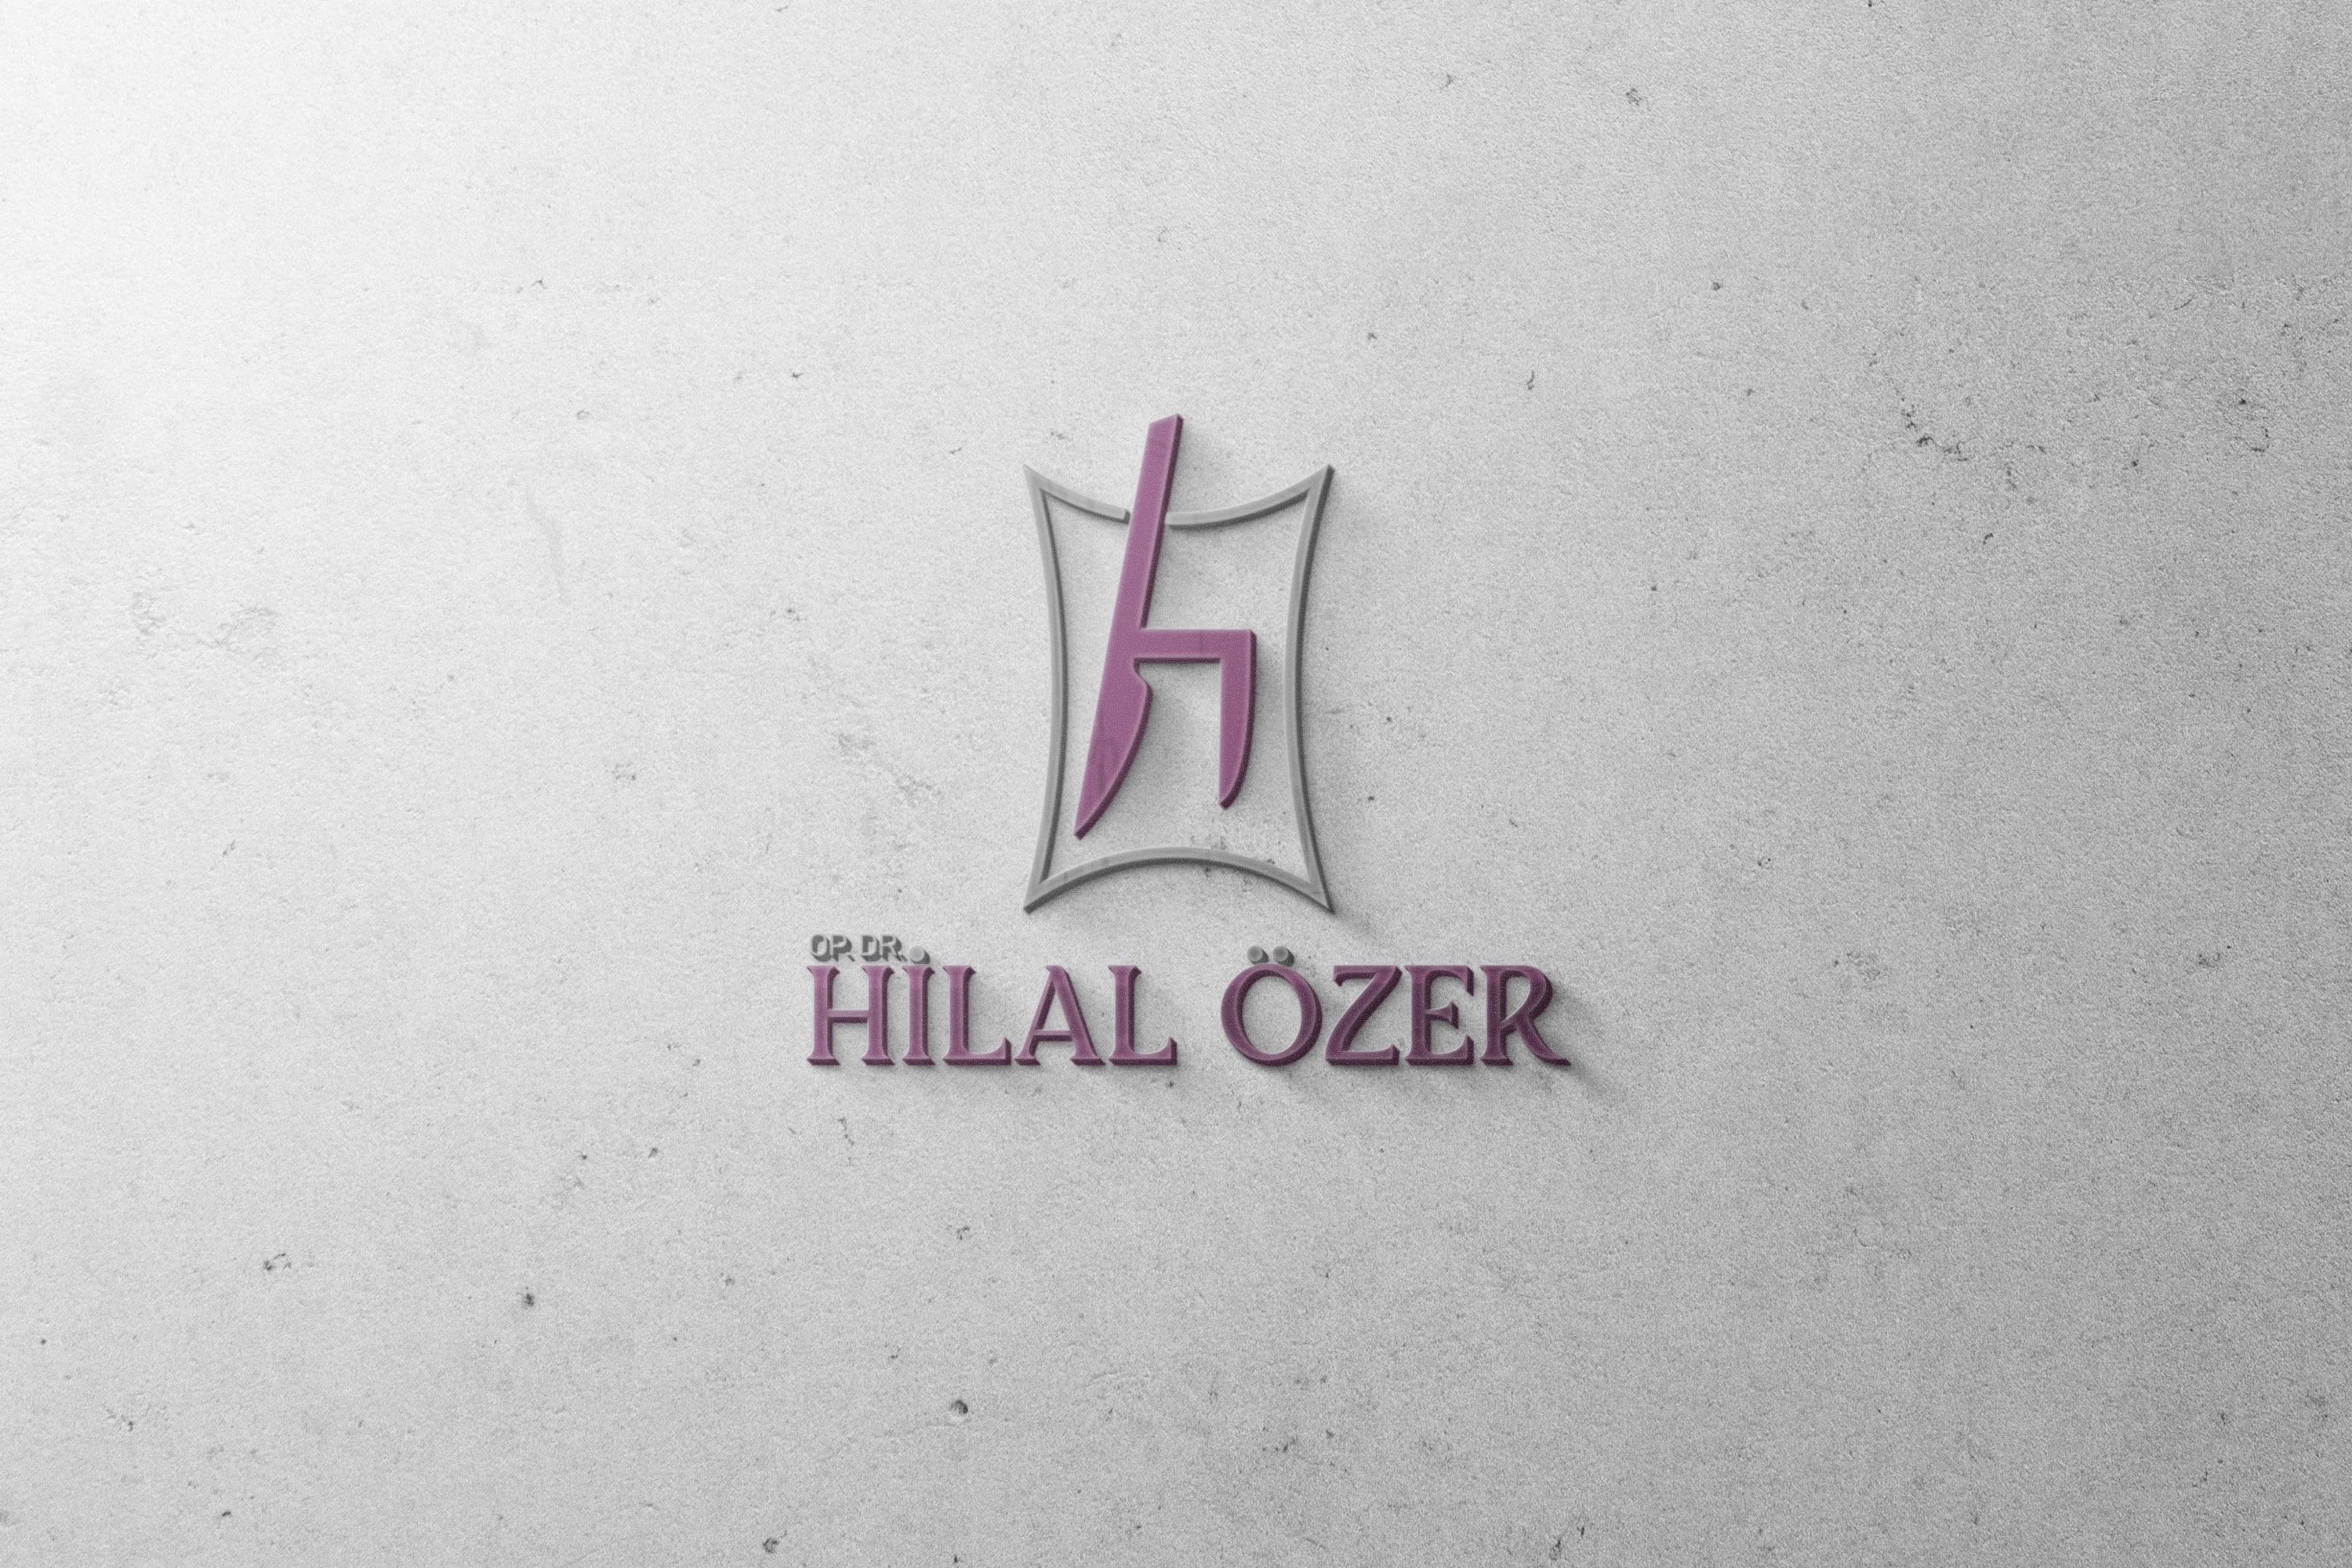 Dr. Hilal Özer